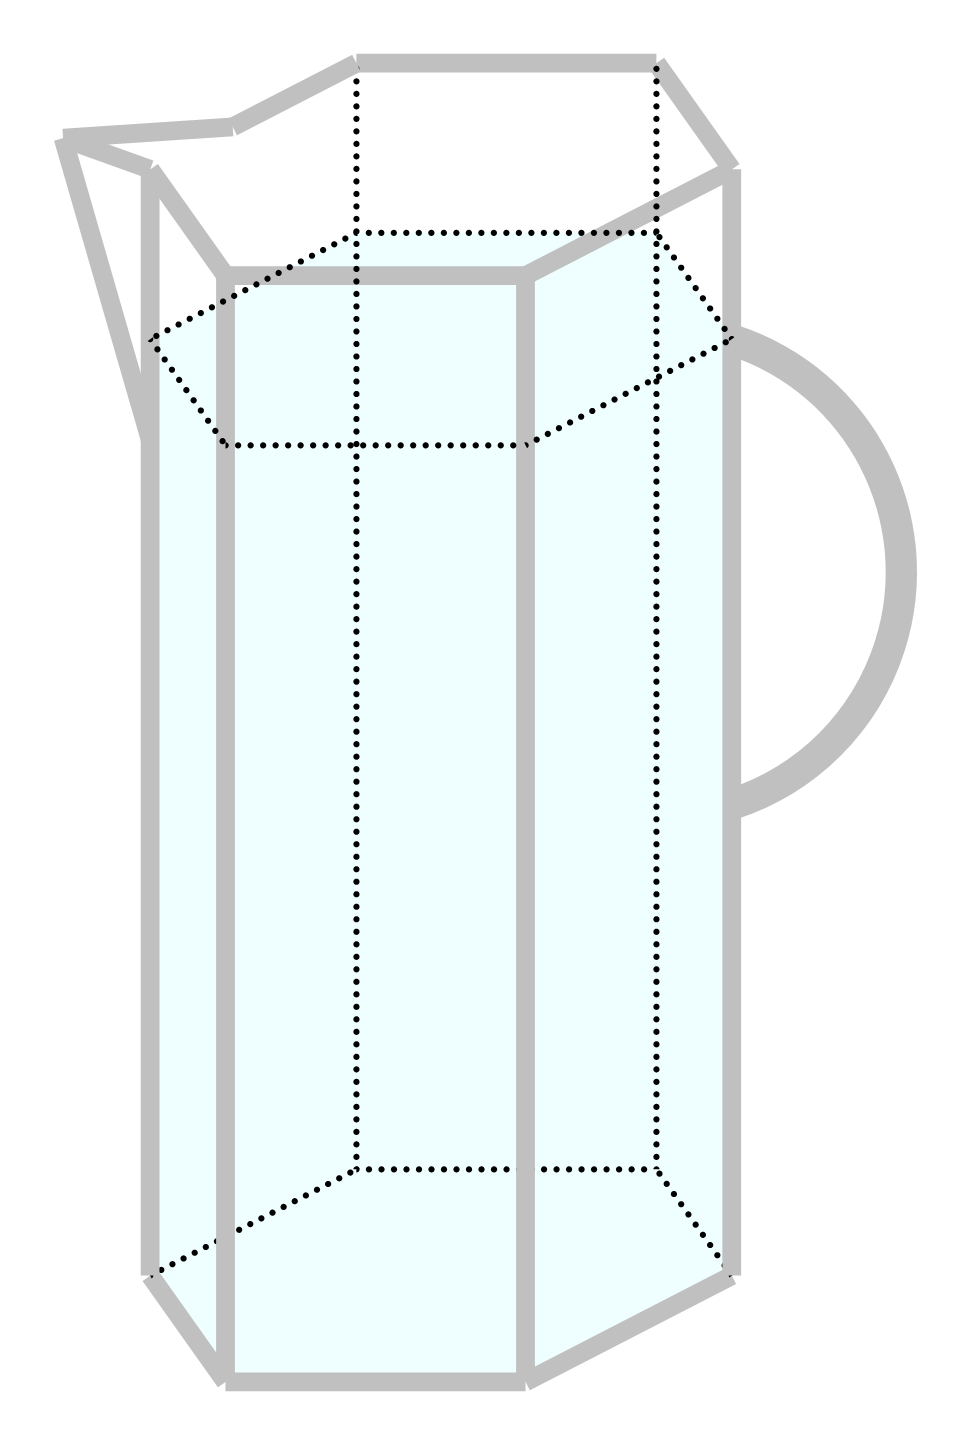 Slika prikazuje vrč s vodom oblika pravilne šesterostrane prizme.